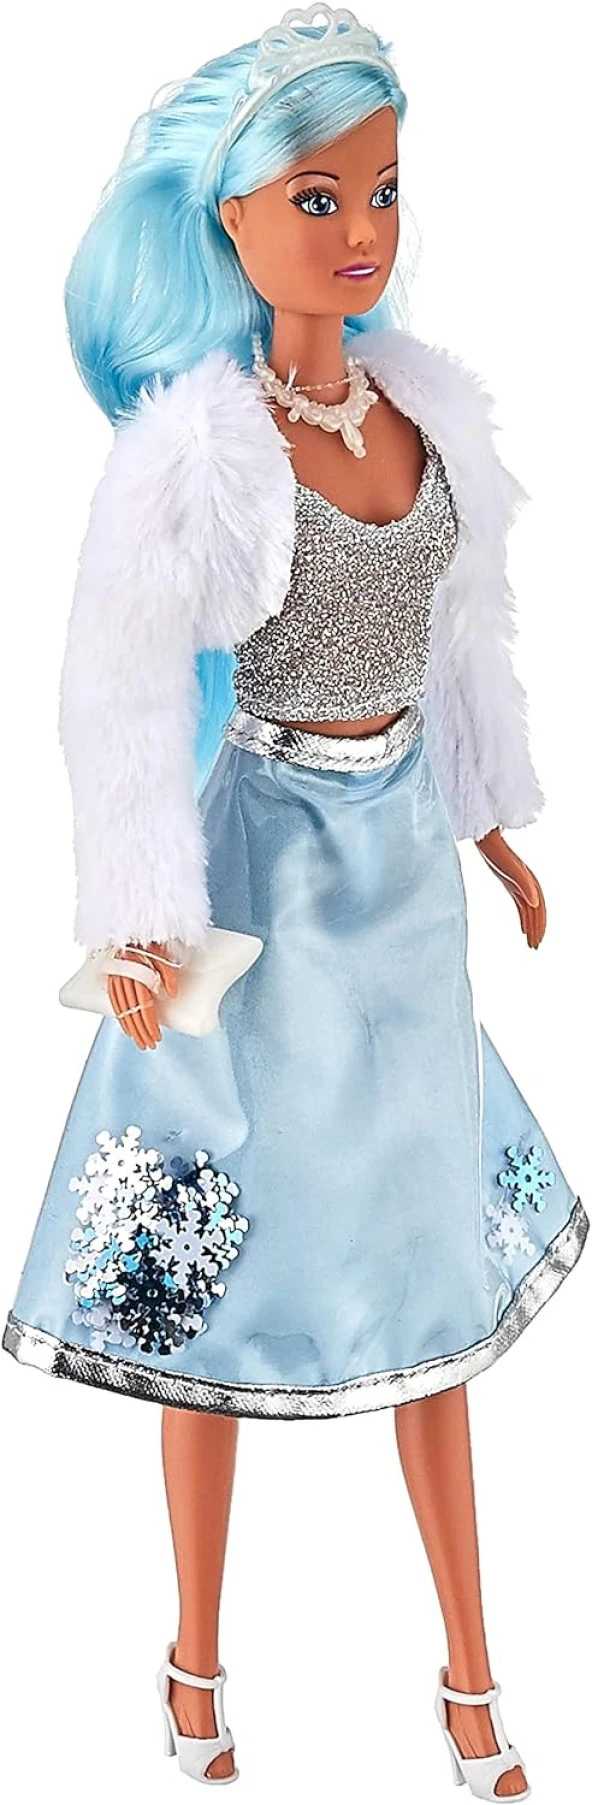 105733491, Steffi Love Bebek Buz Işıltısı Prensesi, Ice Glam, Kar Tanesi Eteği, Aksesuarlar, Şık Kombin, 29cm, Steffi Love Baby Ice Sparkle Princess